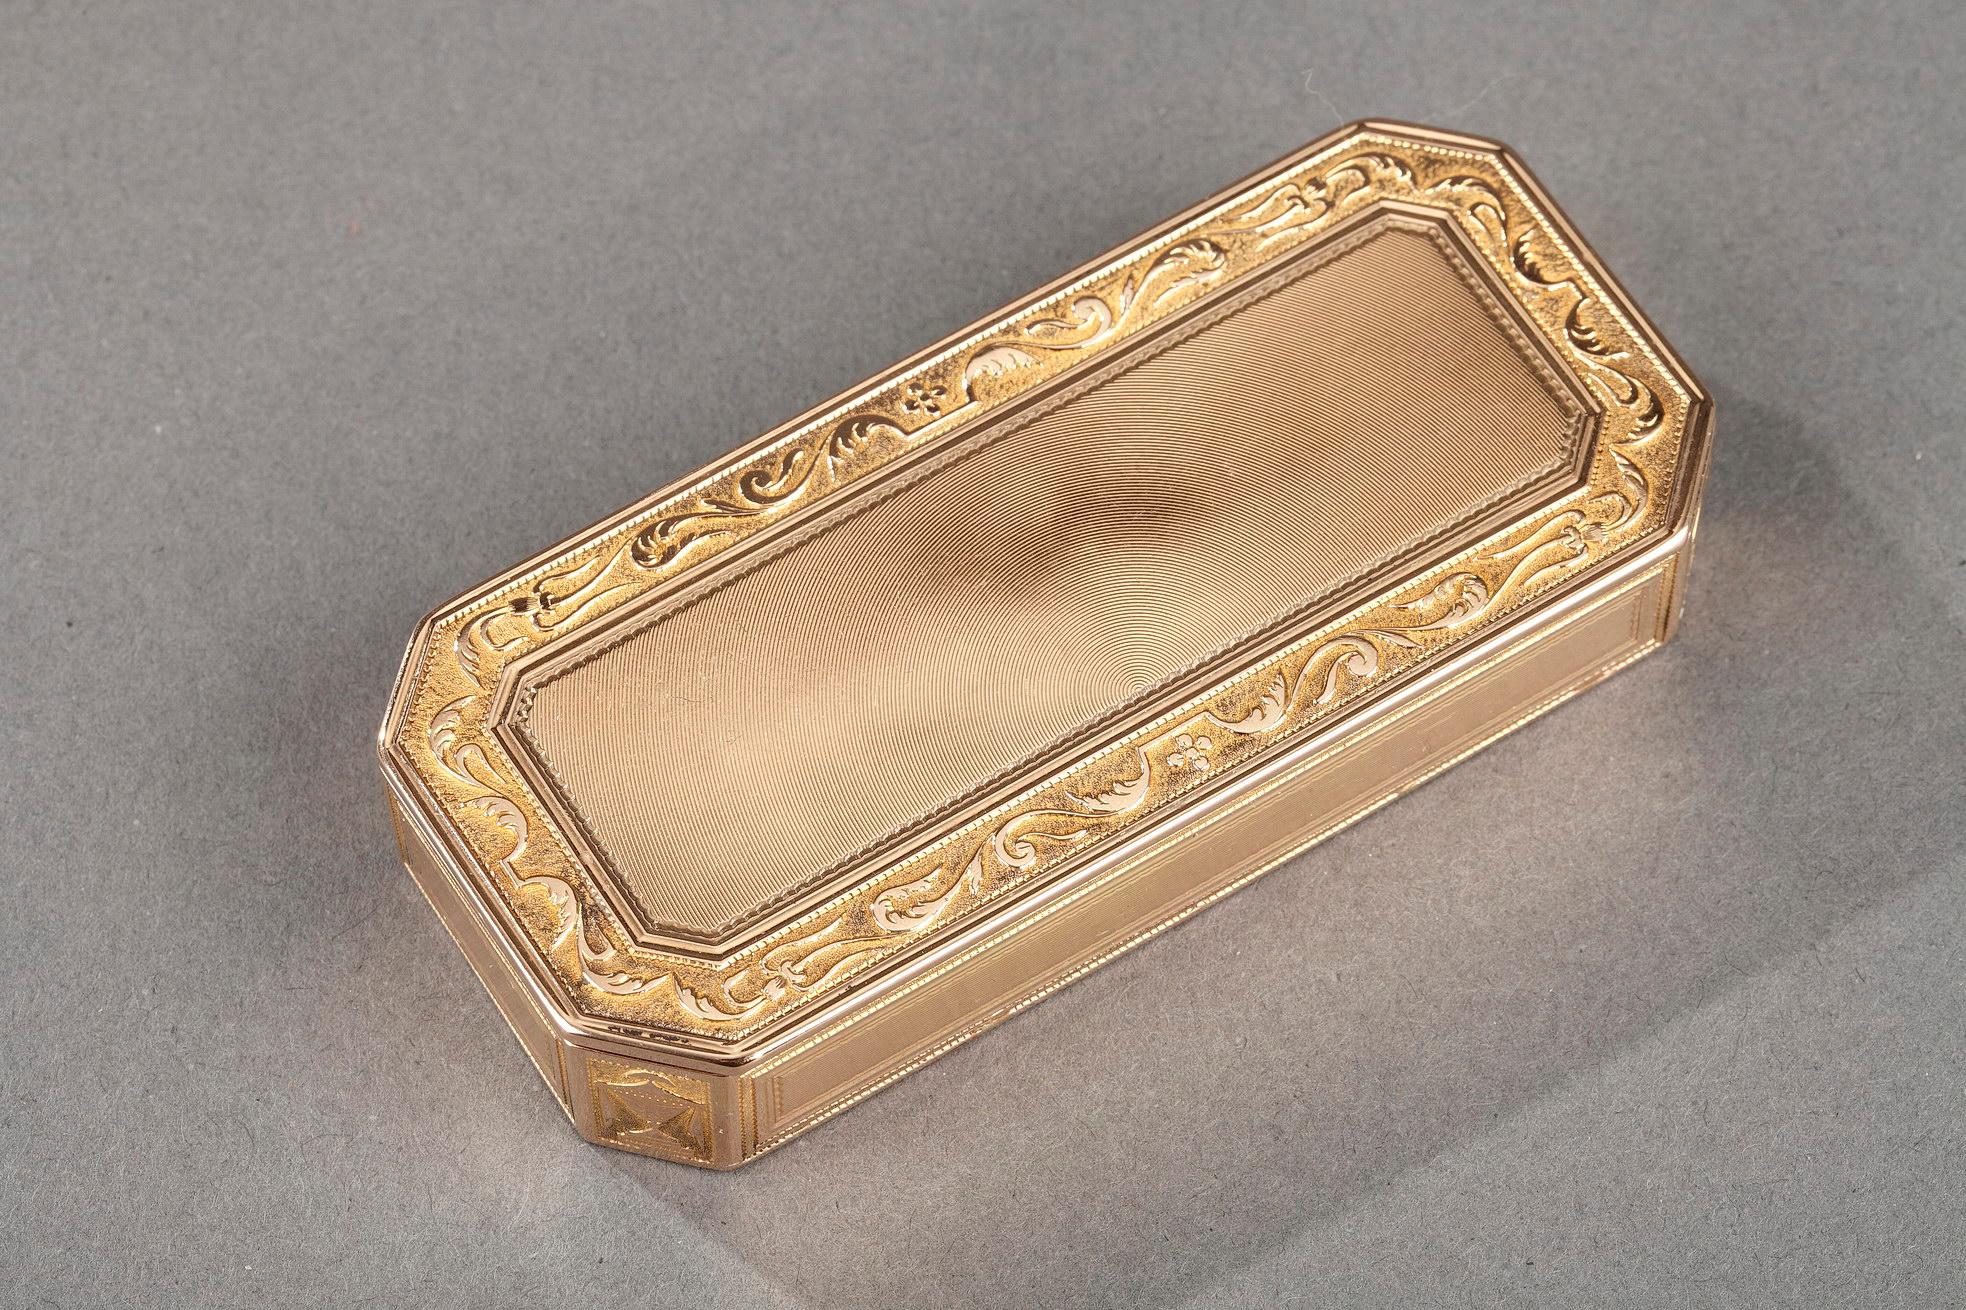 Rechteckige Goldbox mit geschnittenen Seiten. Der scharniergelagerte Golddeckel ist mit konzentrischen Linien verziert, die von einem floralen Fries aus Blattwerk auf Amati-Goldgrund eingerahmt sind. Der Rahmen besteht aus vier Paneelen, die mit